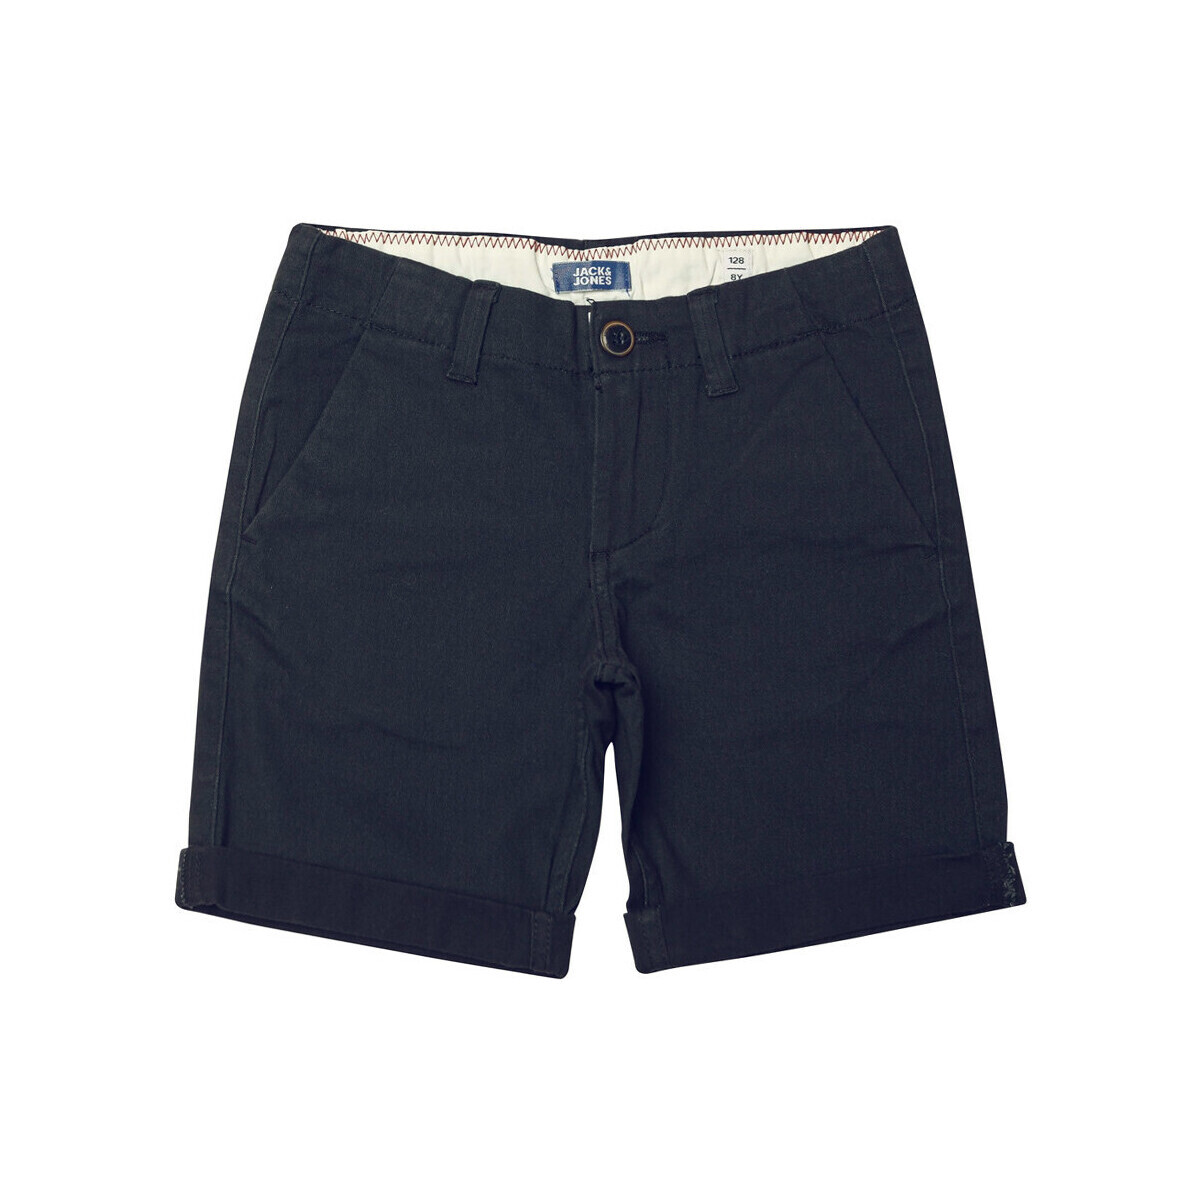 Vêtements Garçon Shorts / Bermudas Jack & Jones 12237165 Bleu